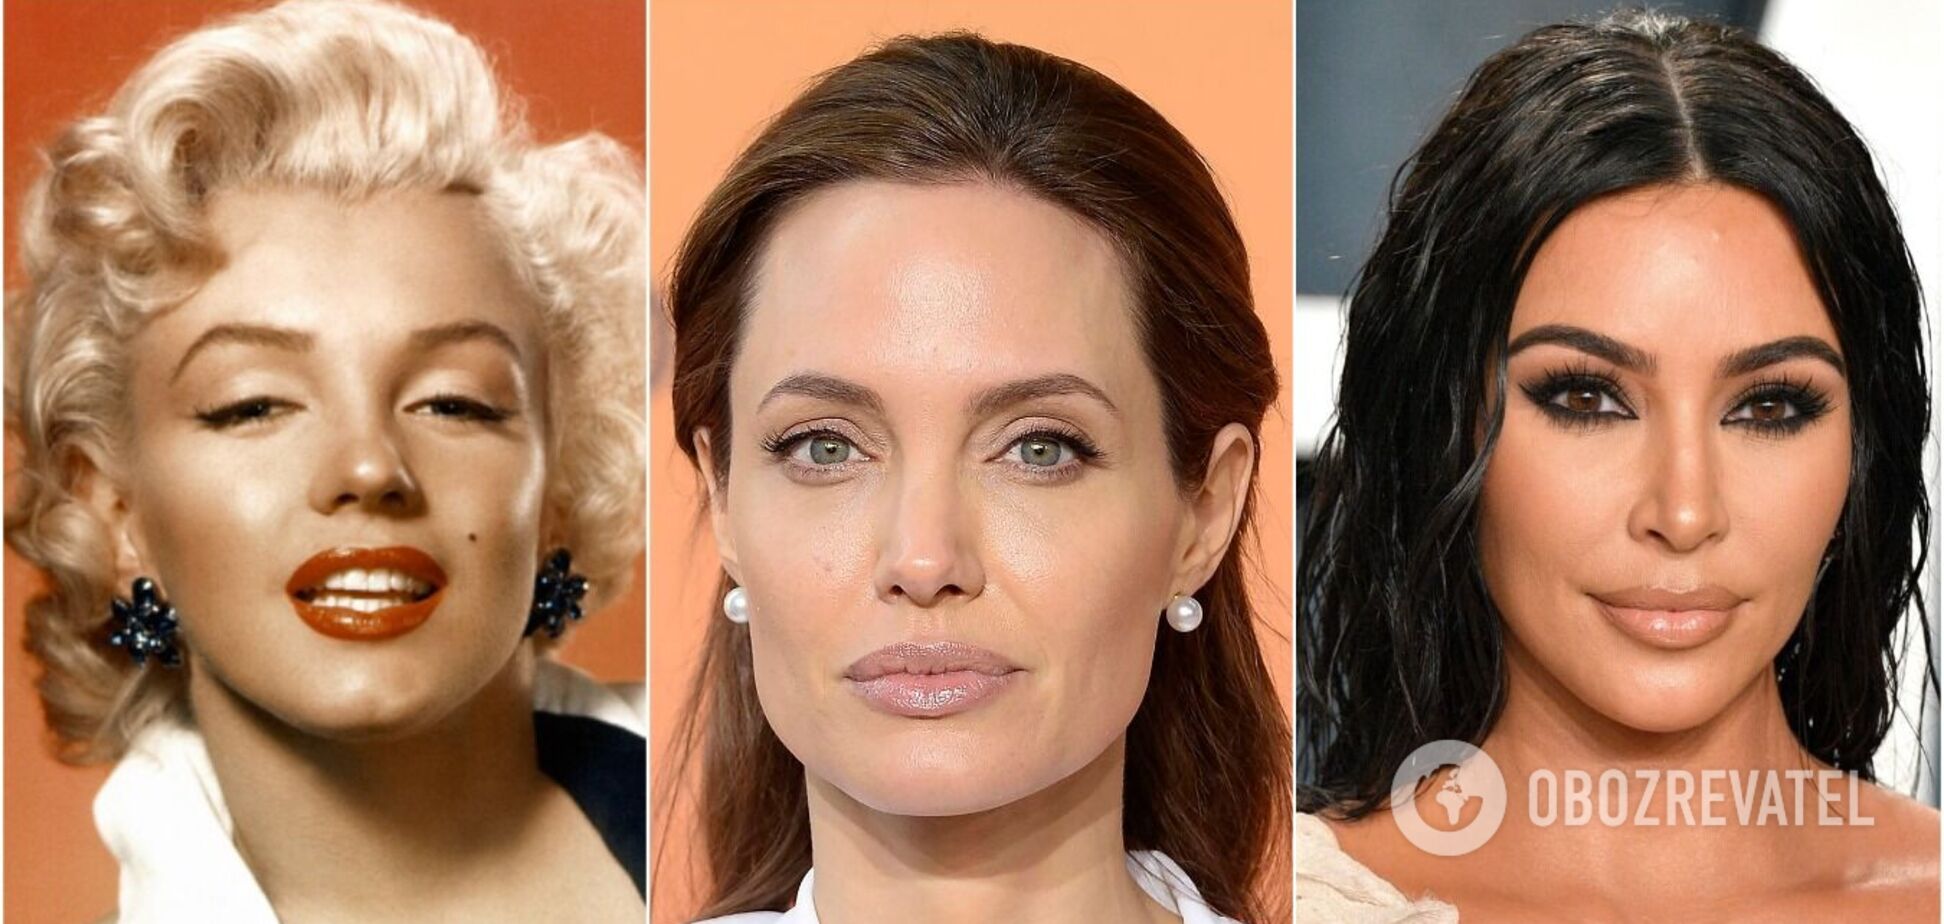 Мэрилин Монро, Анджелина Джоли и Ким Кардашьян: как пластические операции сделали их знаменитыми